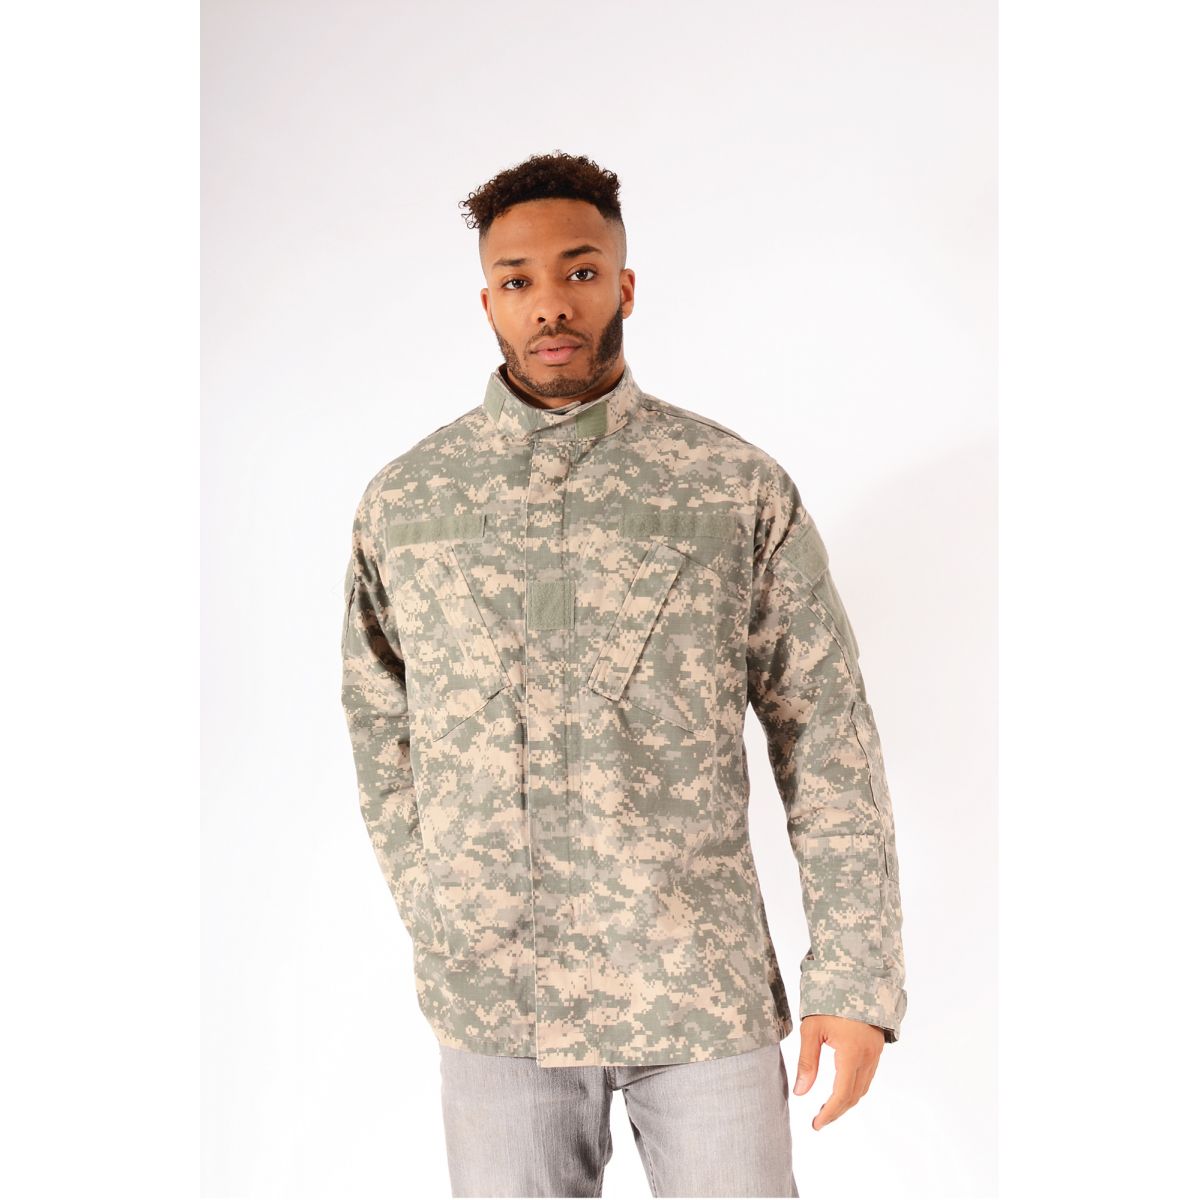 Original Camouflage Military Jacket